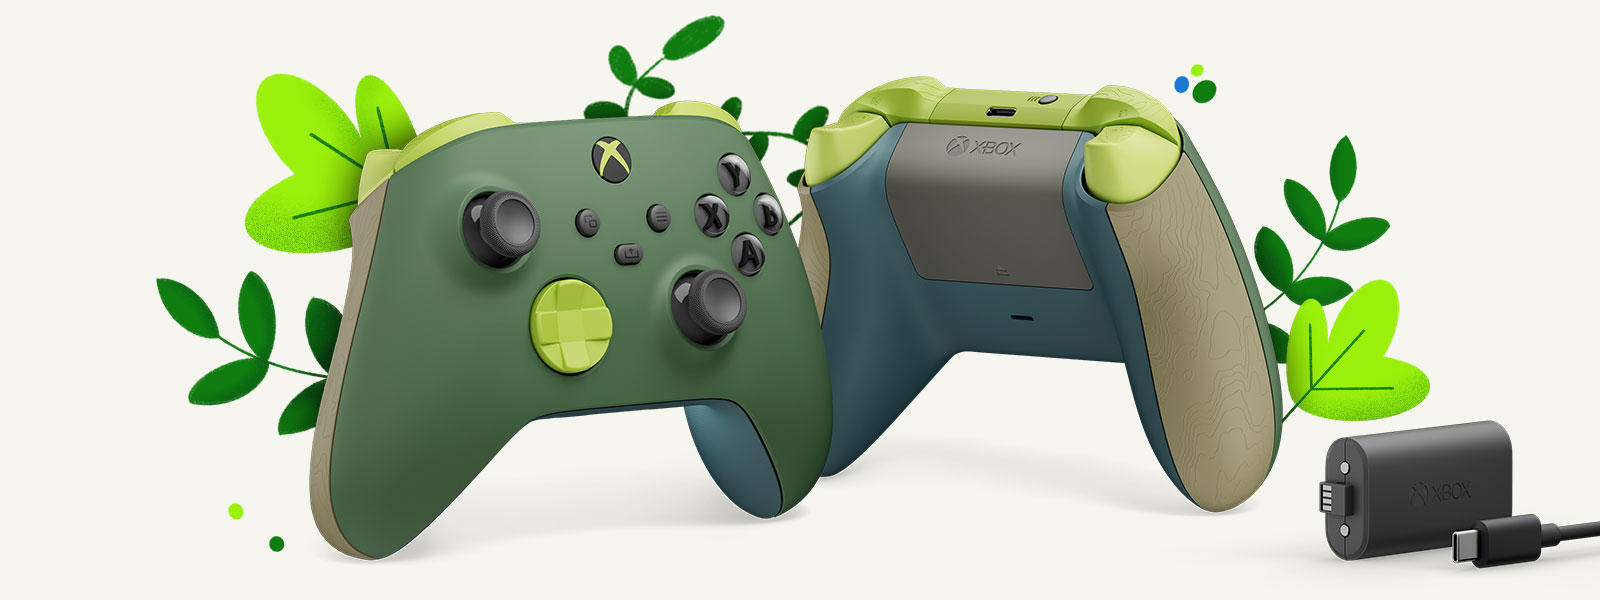 Δύο χειριστήρια σε παράθεση και στο κέντρο, ευθυγραμμισμένα, μπροστά από πράσινα φυτά. Το πρώτο χειριστήριο είναι η μπροστινή πλευρά του ασύρματου χειριστηρίου Remix Special Edition και το άλλο είναι η πίσω πλευρά του ασύρματου χειριστηρίου Remix Special Edition. Το επαναφορτιζόμενο πακέτο μπαταριών Xbox εμφανίζεται στην άκρη δεξιά.